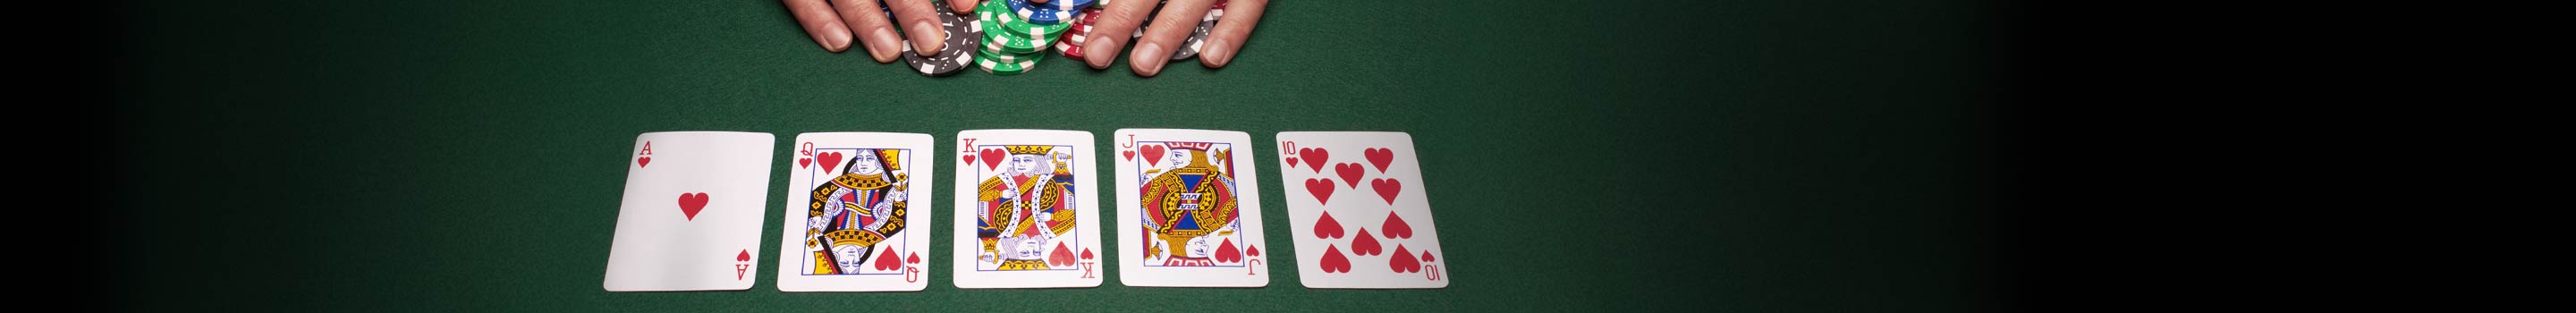 Výherné kombinácie kariet v pokri